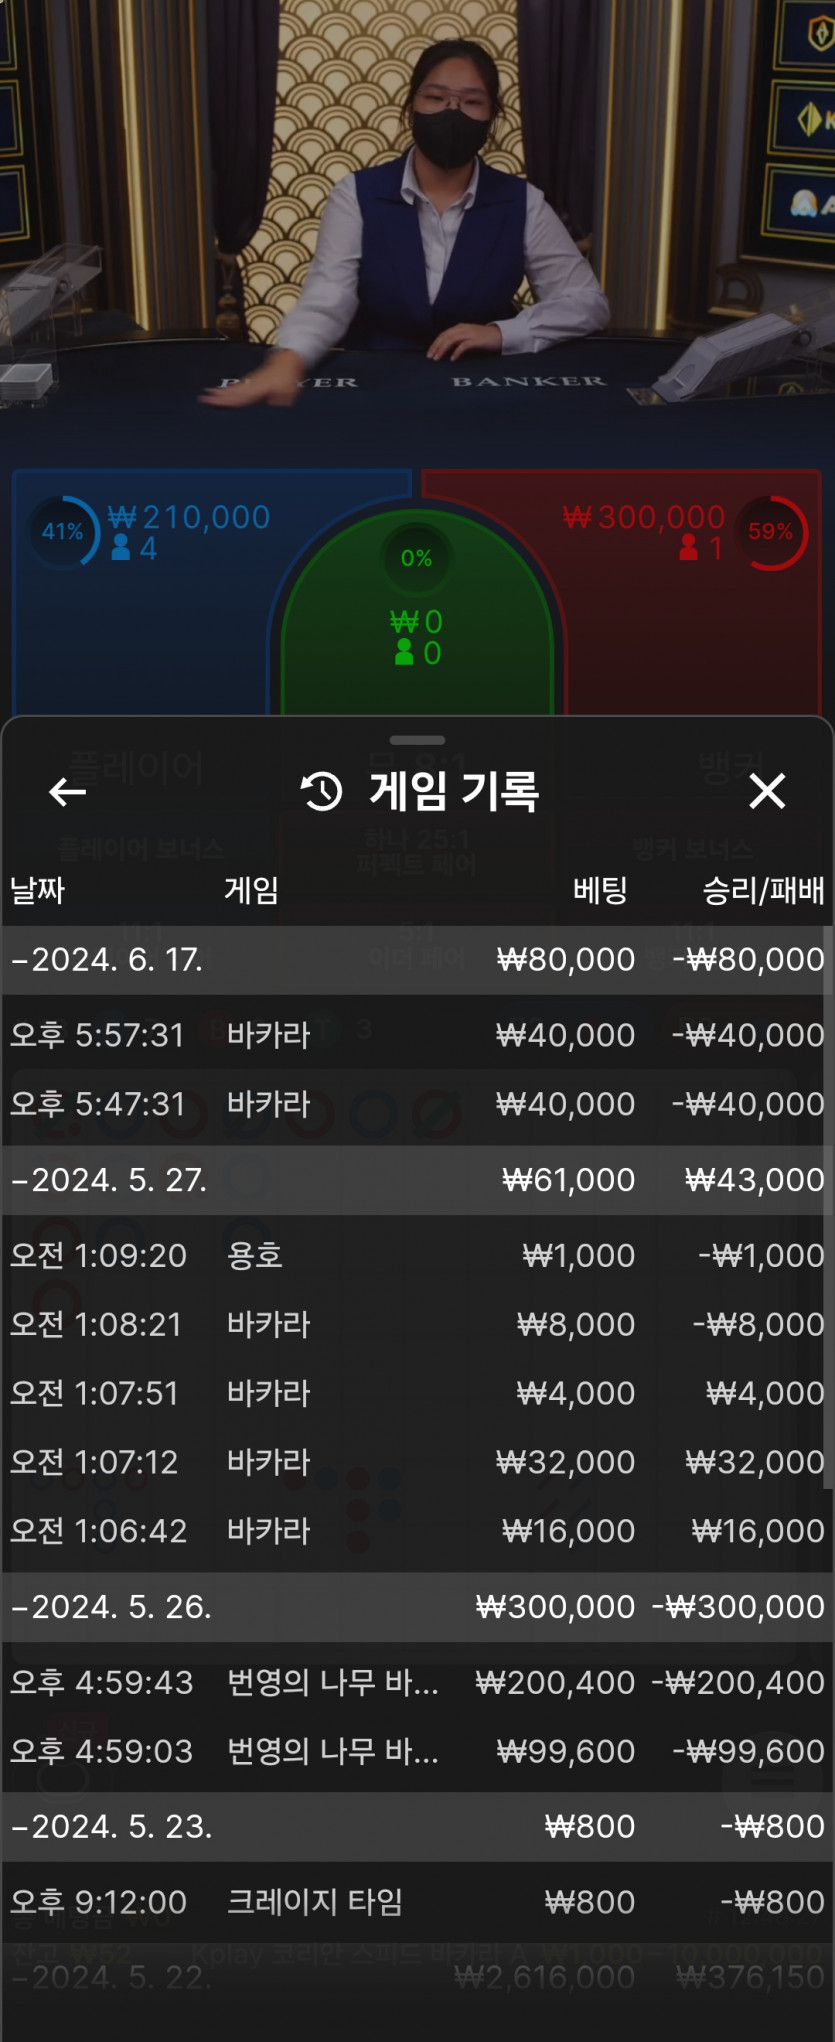 히스토리님배트리플김치쥬이쥬3 5만 릴깜 사전인듕(0)